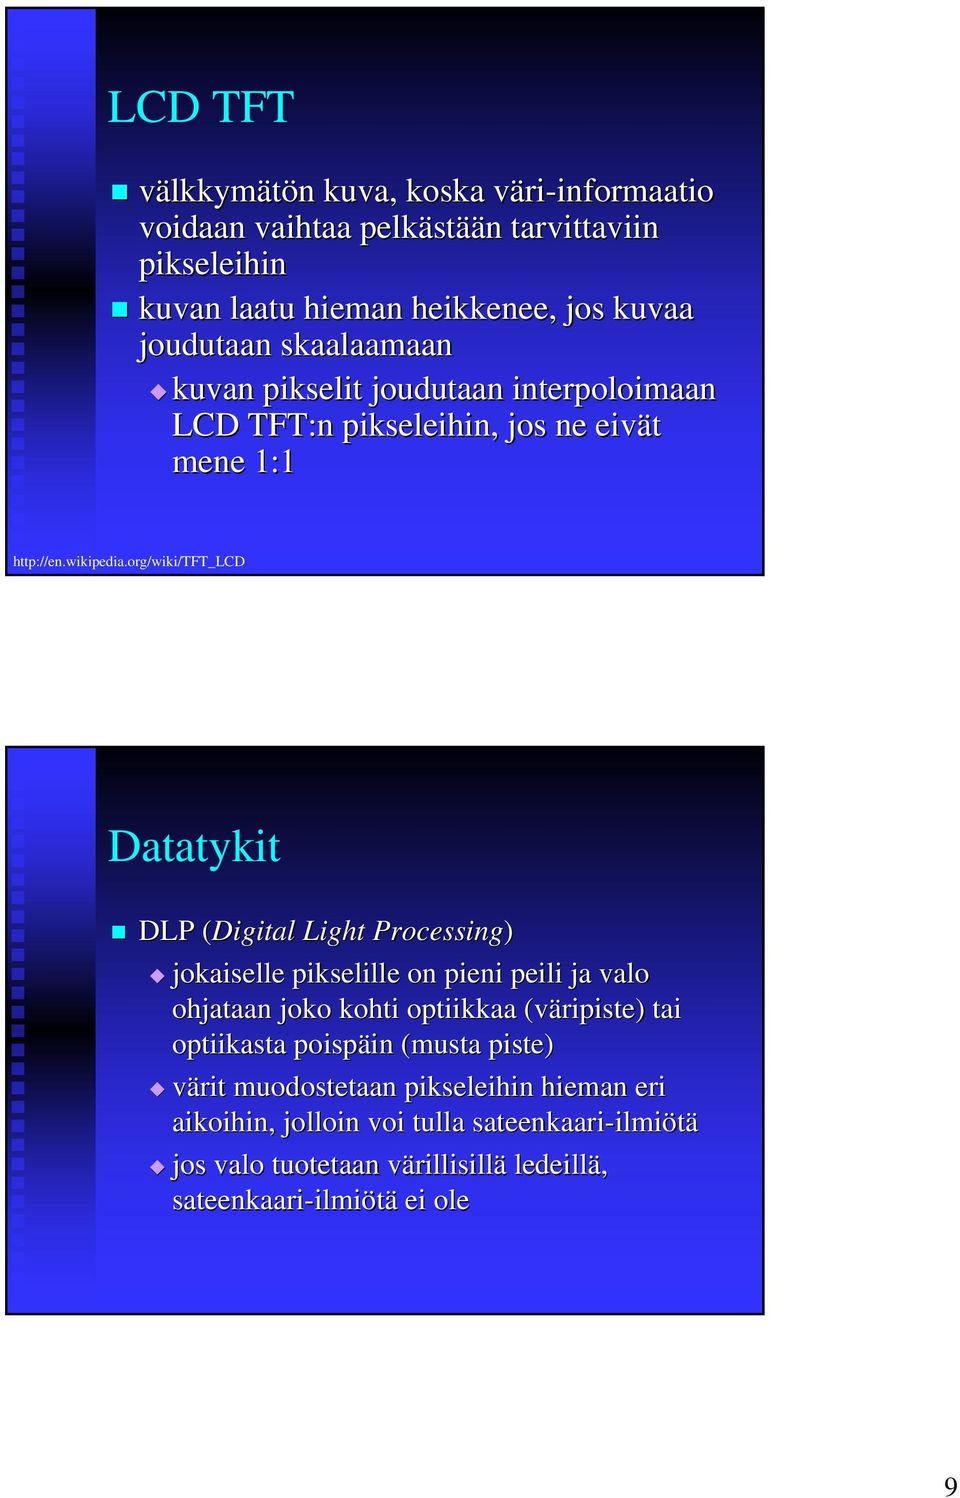 org/wiki/tft_lcd Datatykit DLP (Digital( Light Processing) jokaiselle pikselille on pieni peili ja valo ohjataan joko kohti optiikkaa (väripiste) tai optiikasta